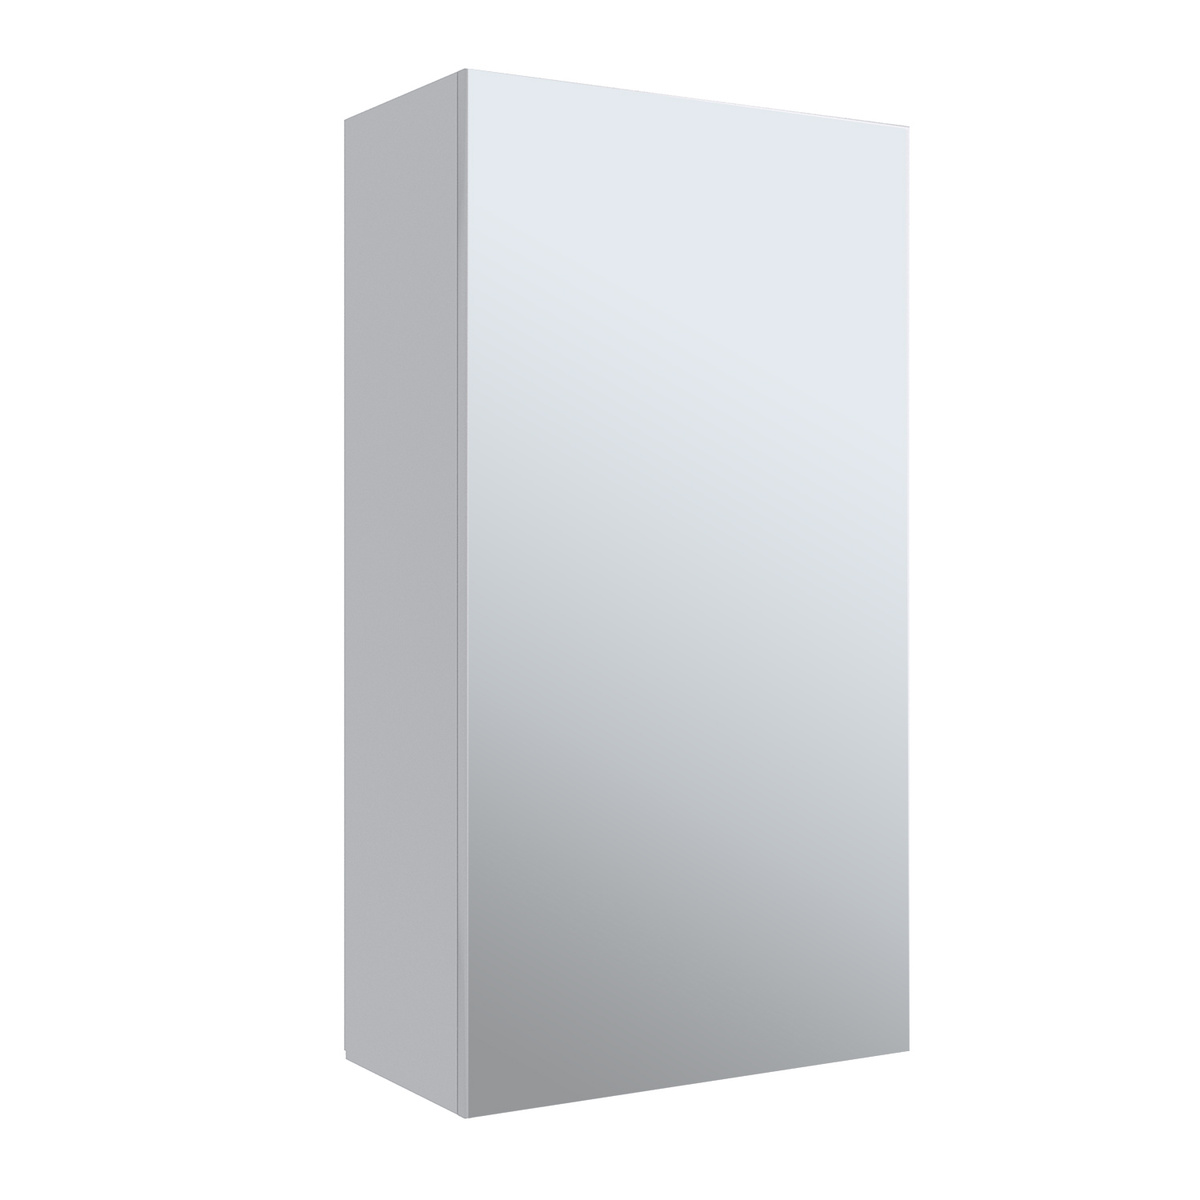 Зеркало шкаф для ванной / Runo / Лада 40 / белый / полка для ваннойТекст при отключенной в браузере загрузке изображений